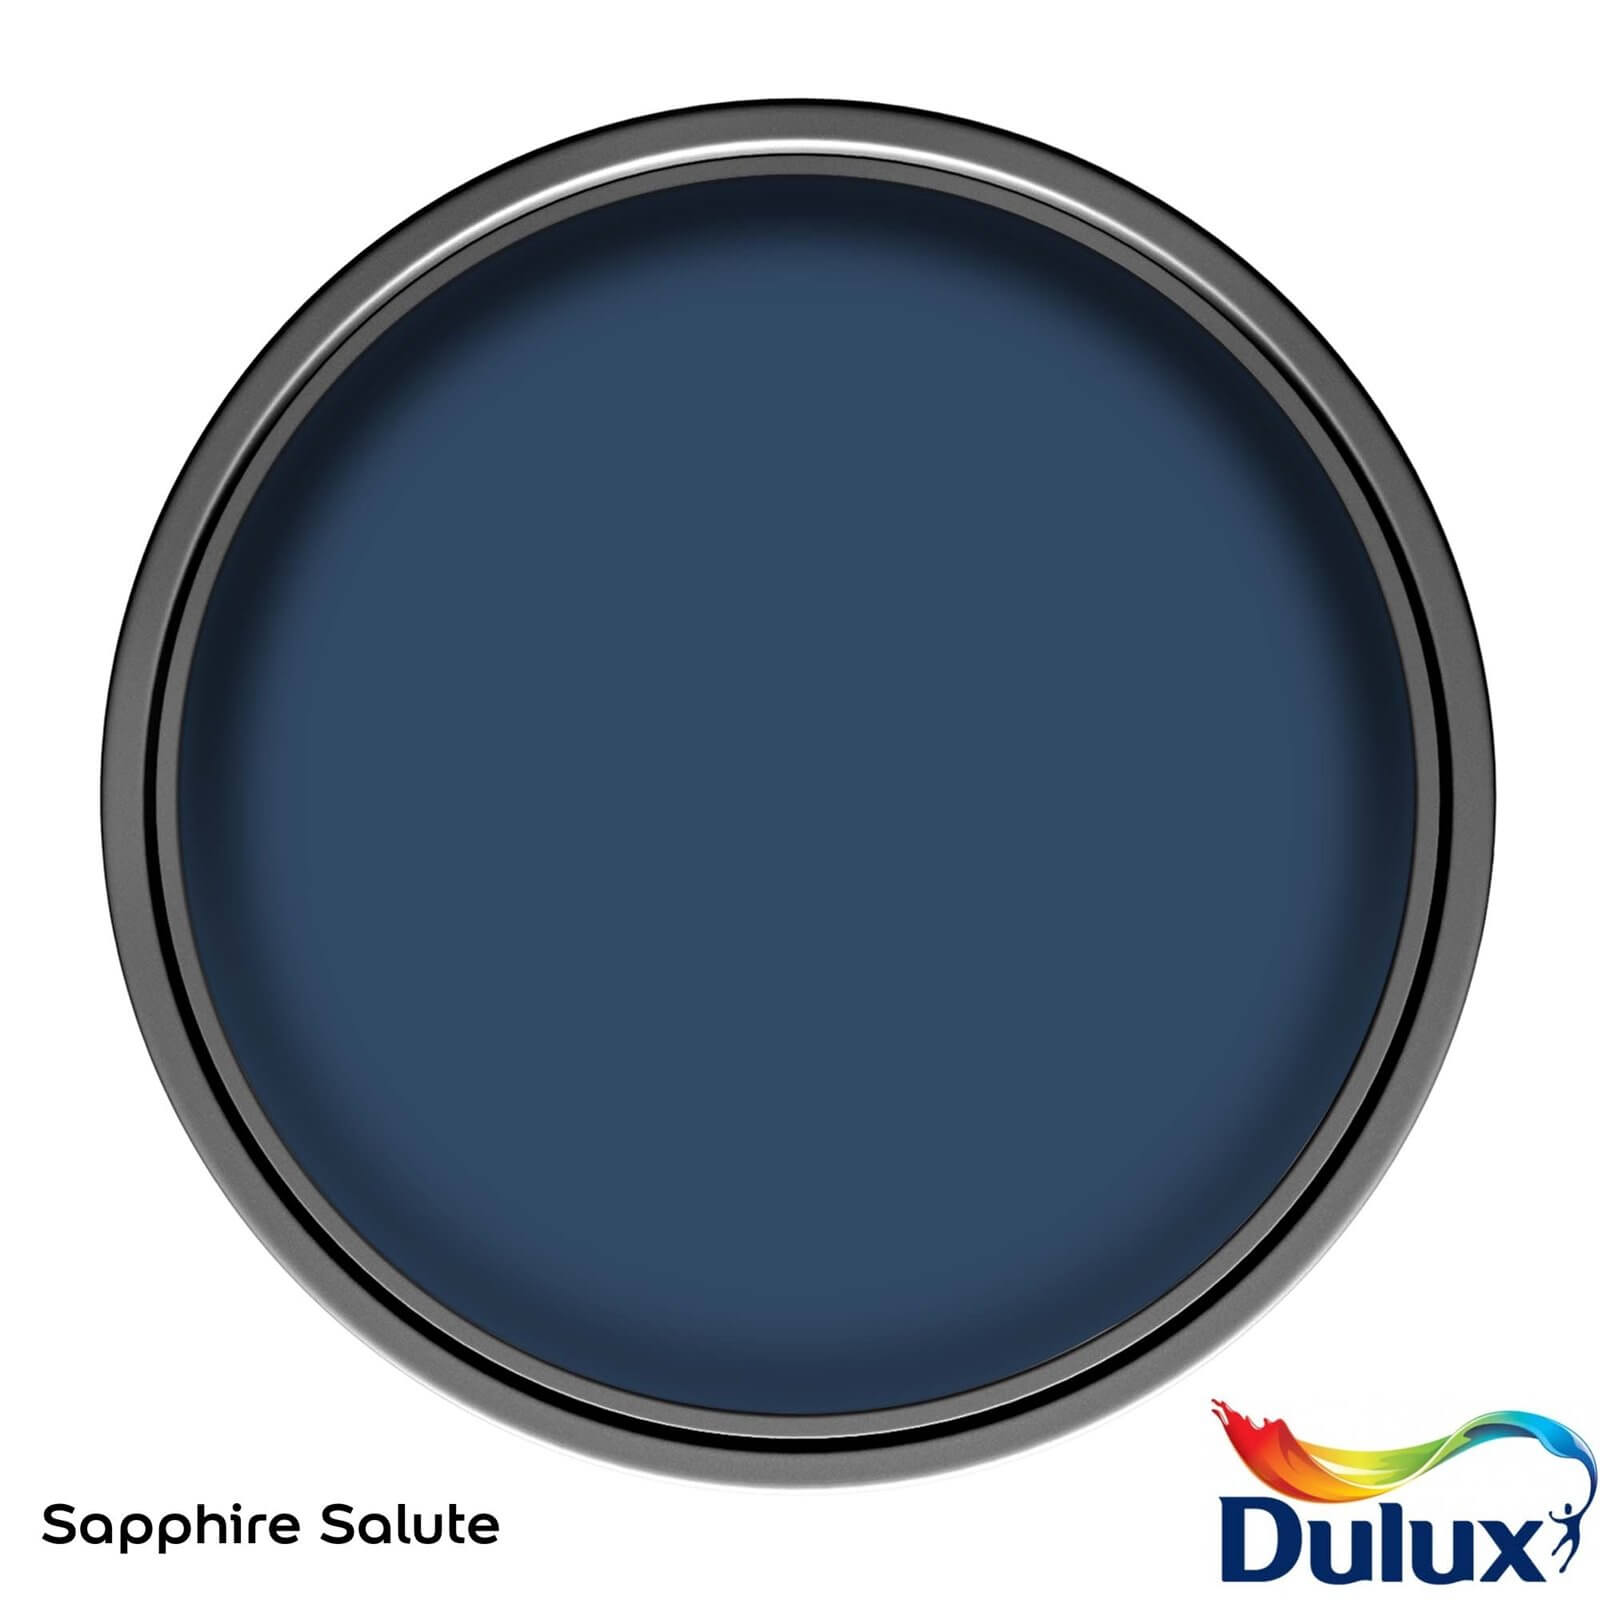 Dulux Easycare Kitchen Sapphire Salute Matt Paint - 2.5L